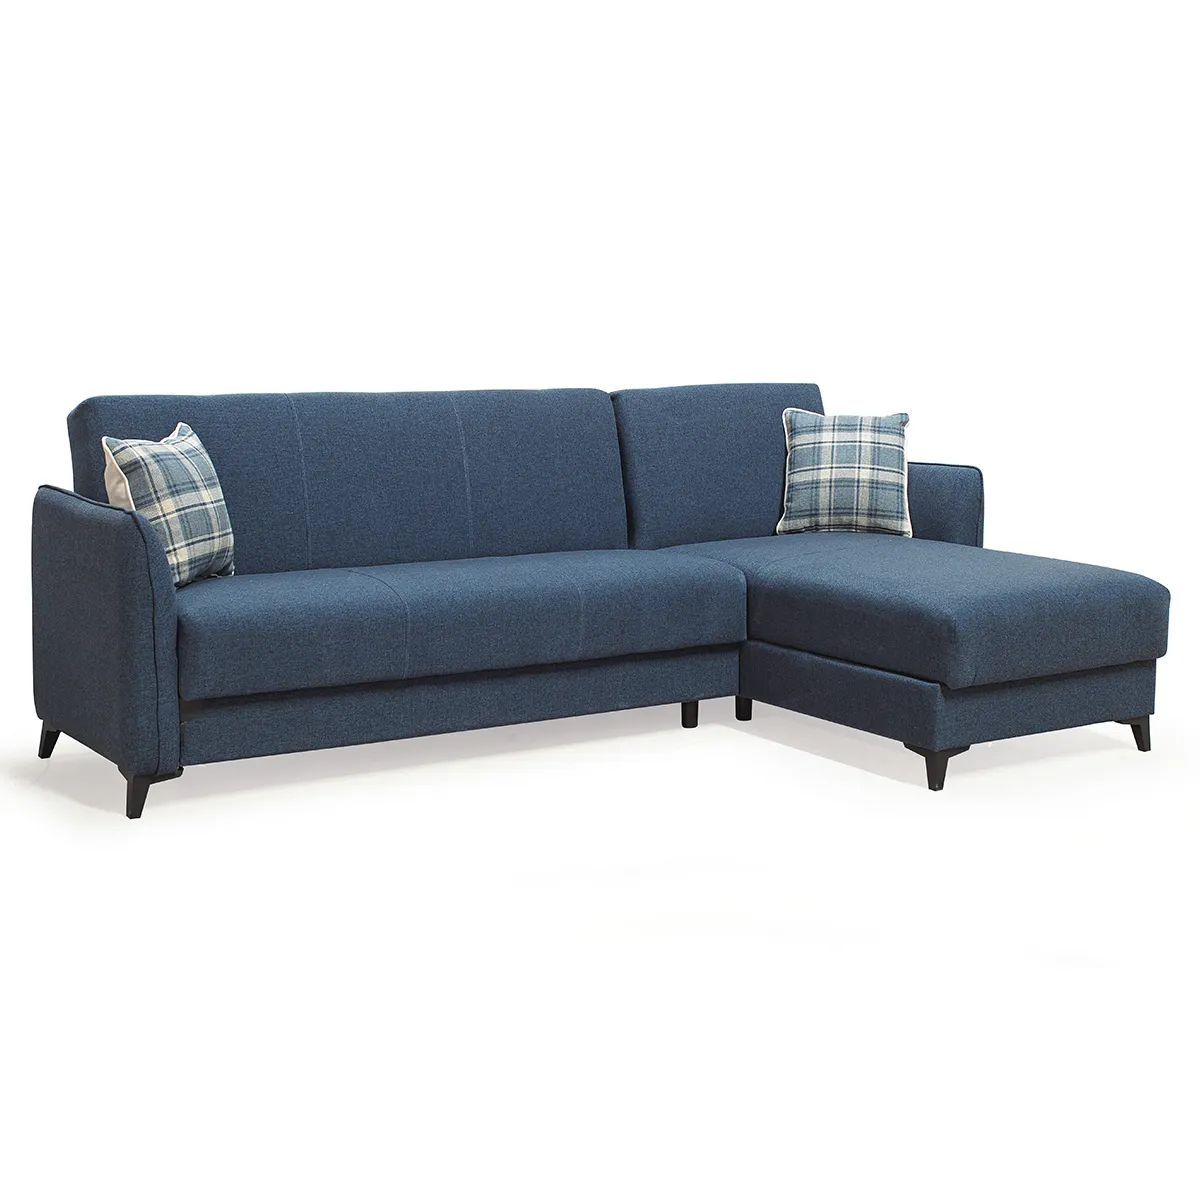 أريكة سرير بتصميم مميز باللون الأزرق من UKFR مصنوعة من الجلد الناعم العثماني لغرفة المعيشة مورد أثاث تركي مشروع 3 2 1